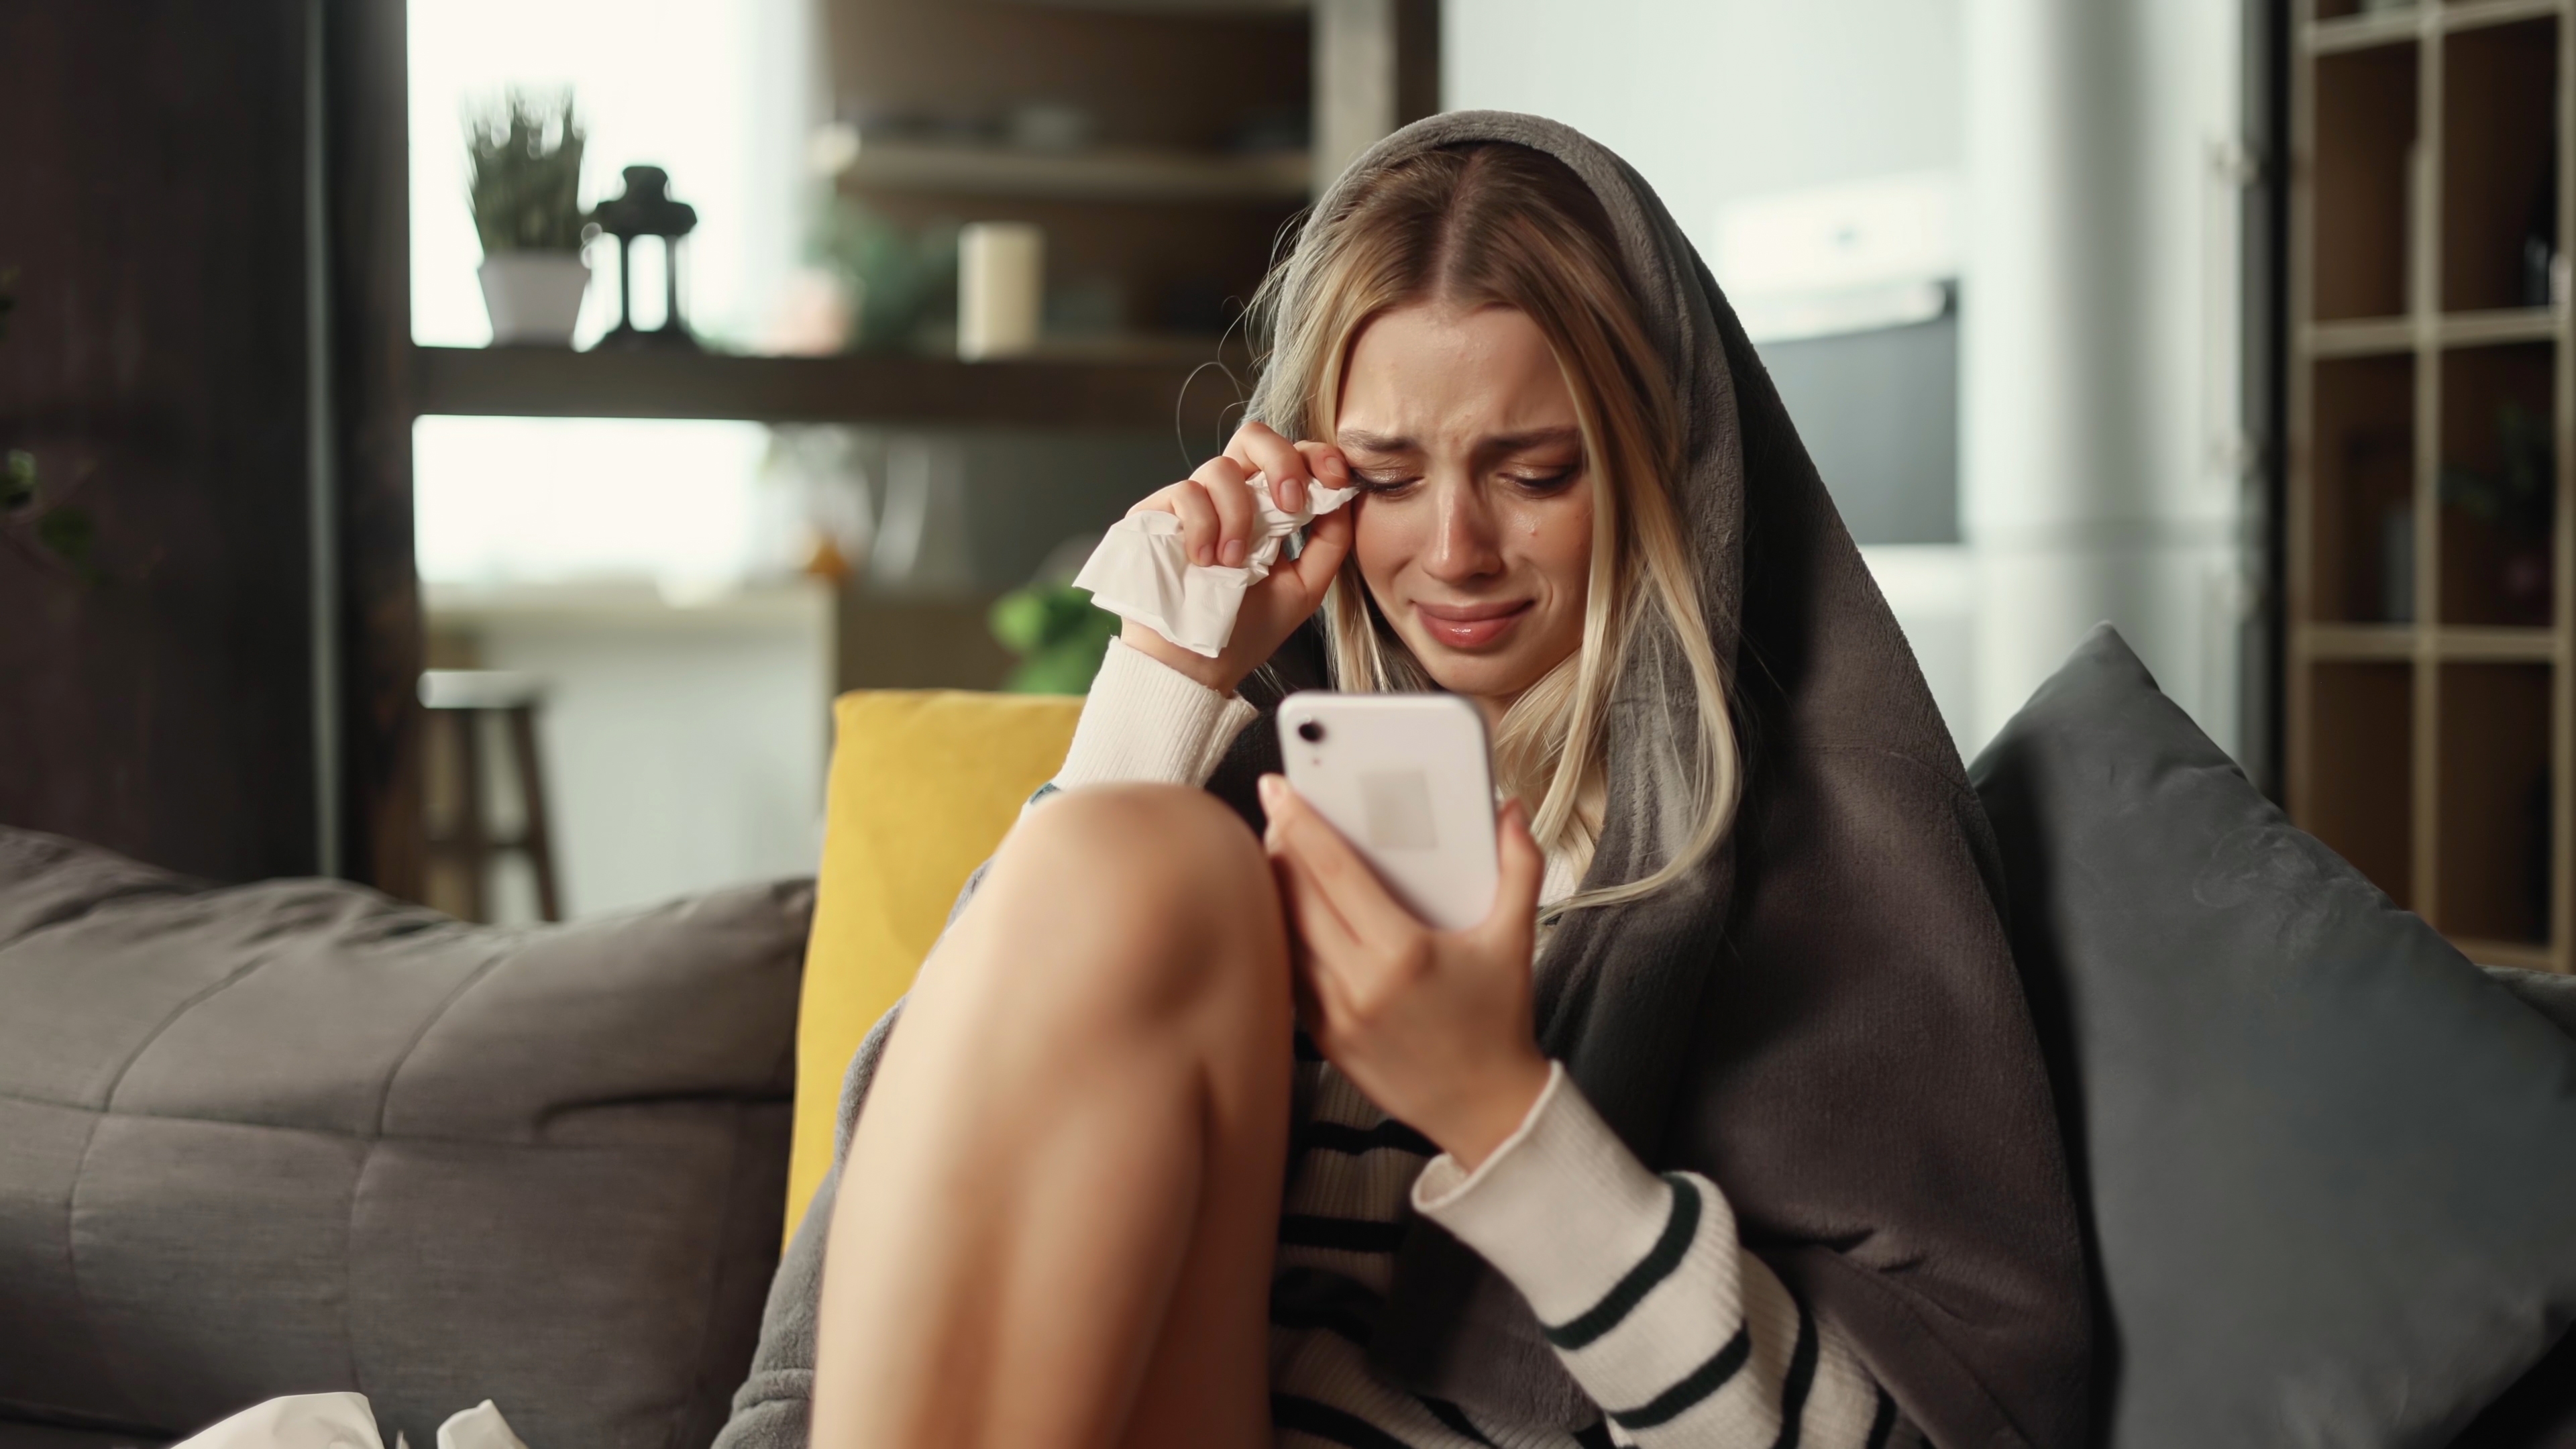 Junge Frau weint, während sie ihr Telefon benutzt | Quelle: Shutterstock